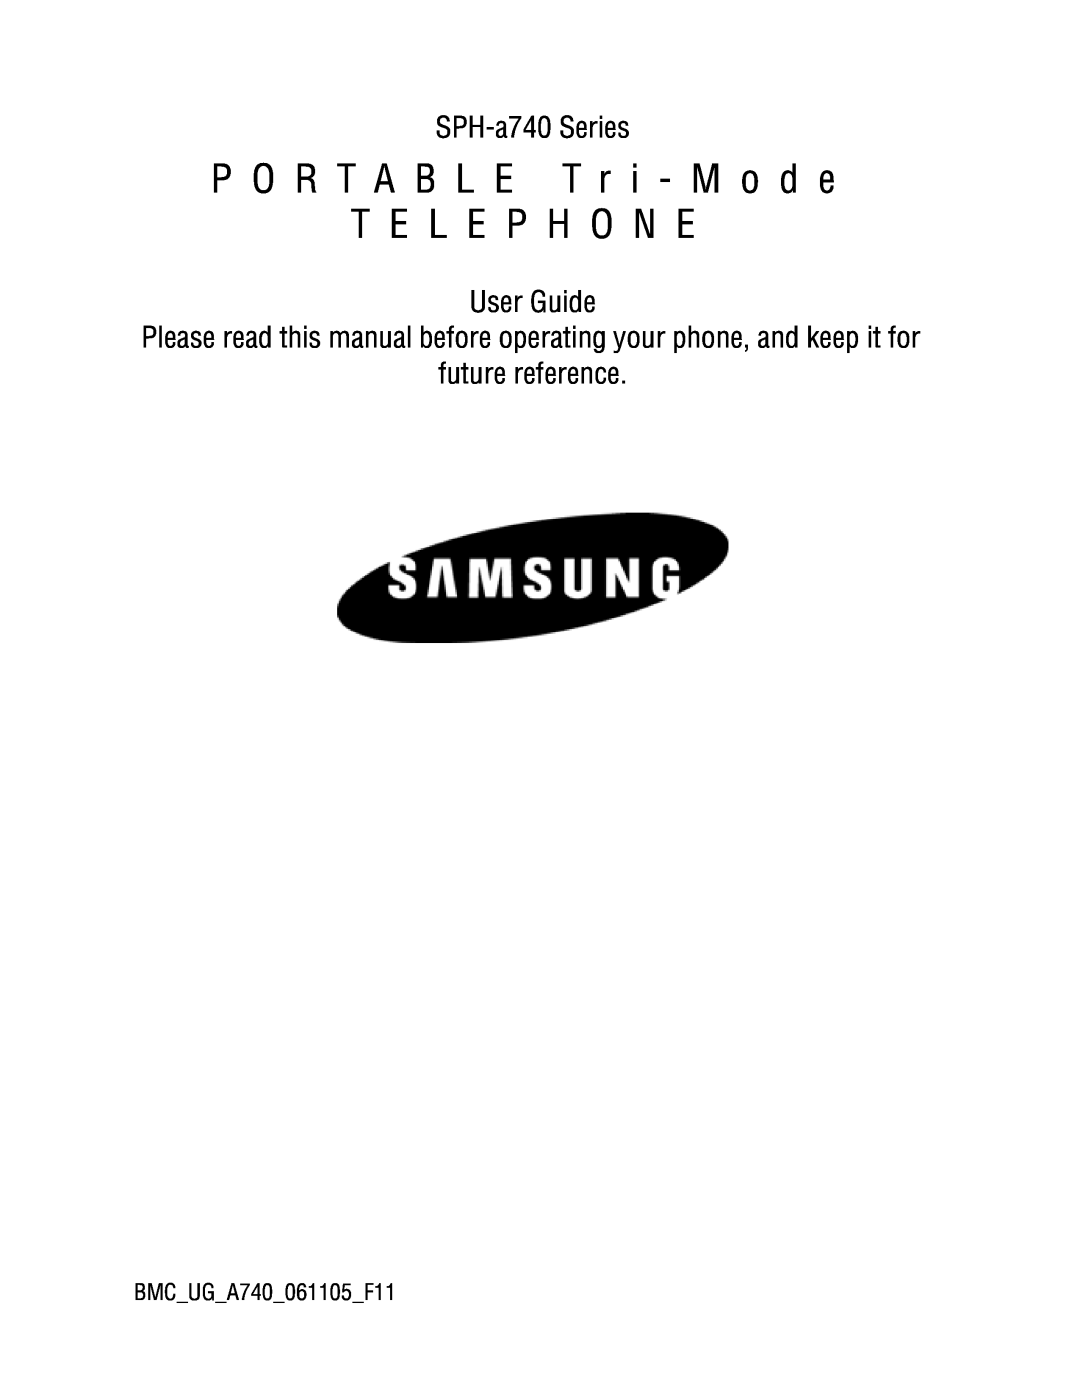 Samsung manual P O R T A B L E T r i - M o d e T E L E P H O N E, SPH-a740 Series, User Guide, future reference 